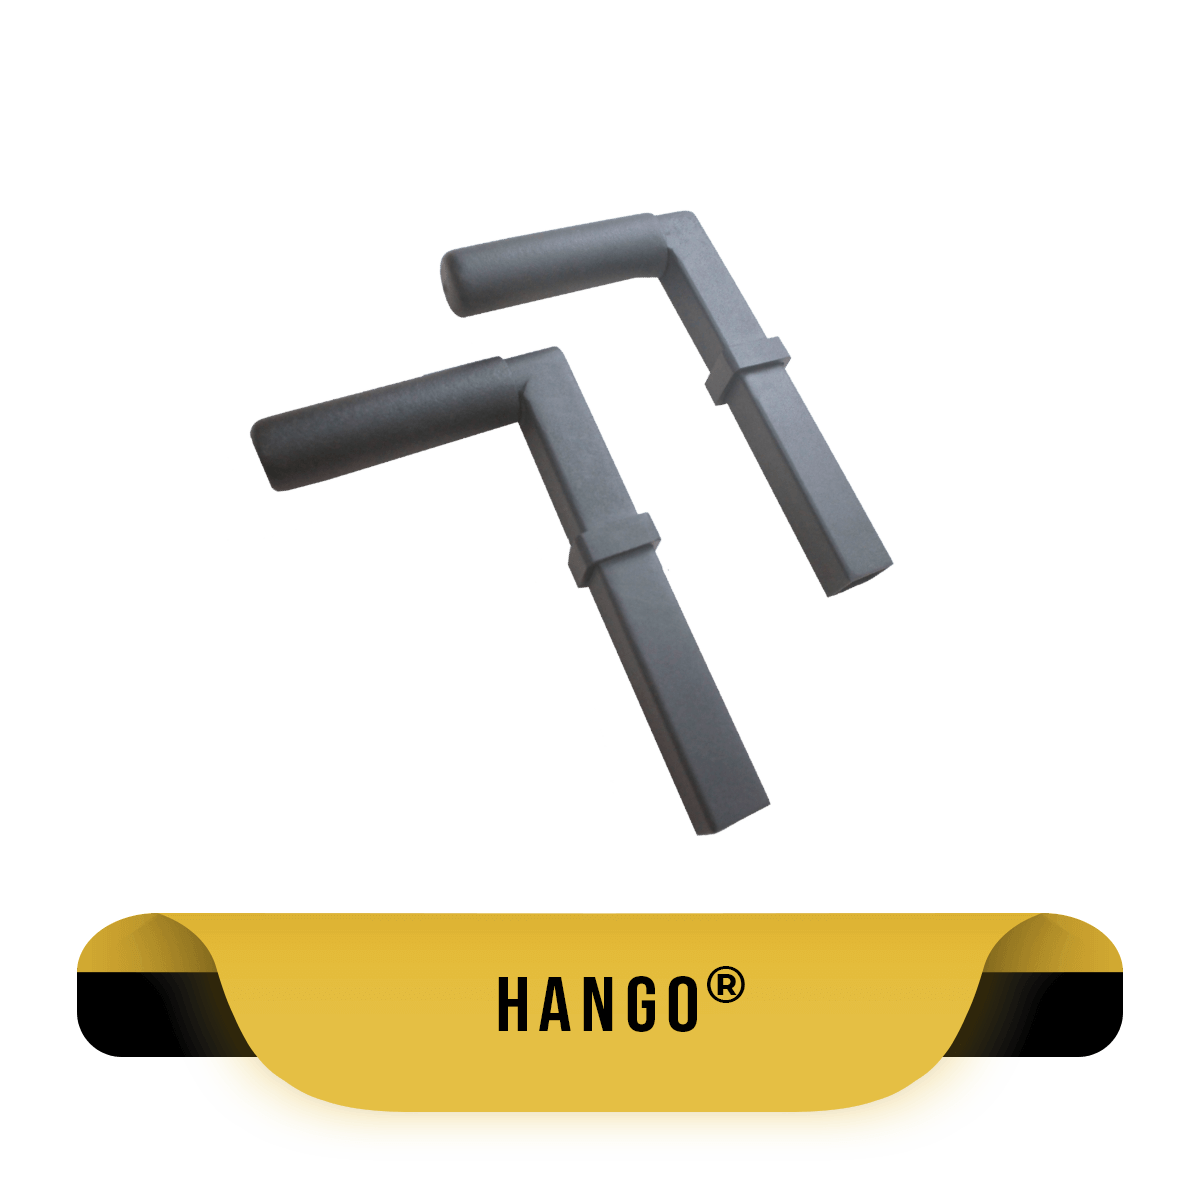 Hango